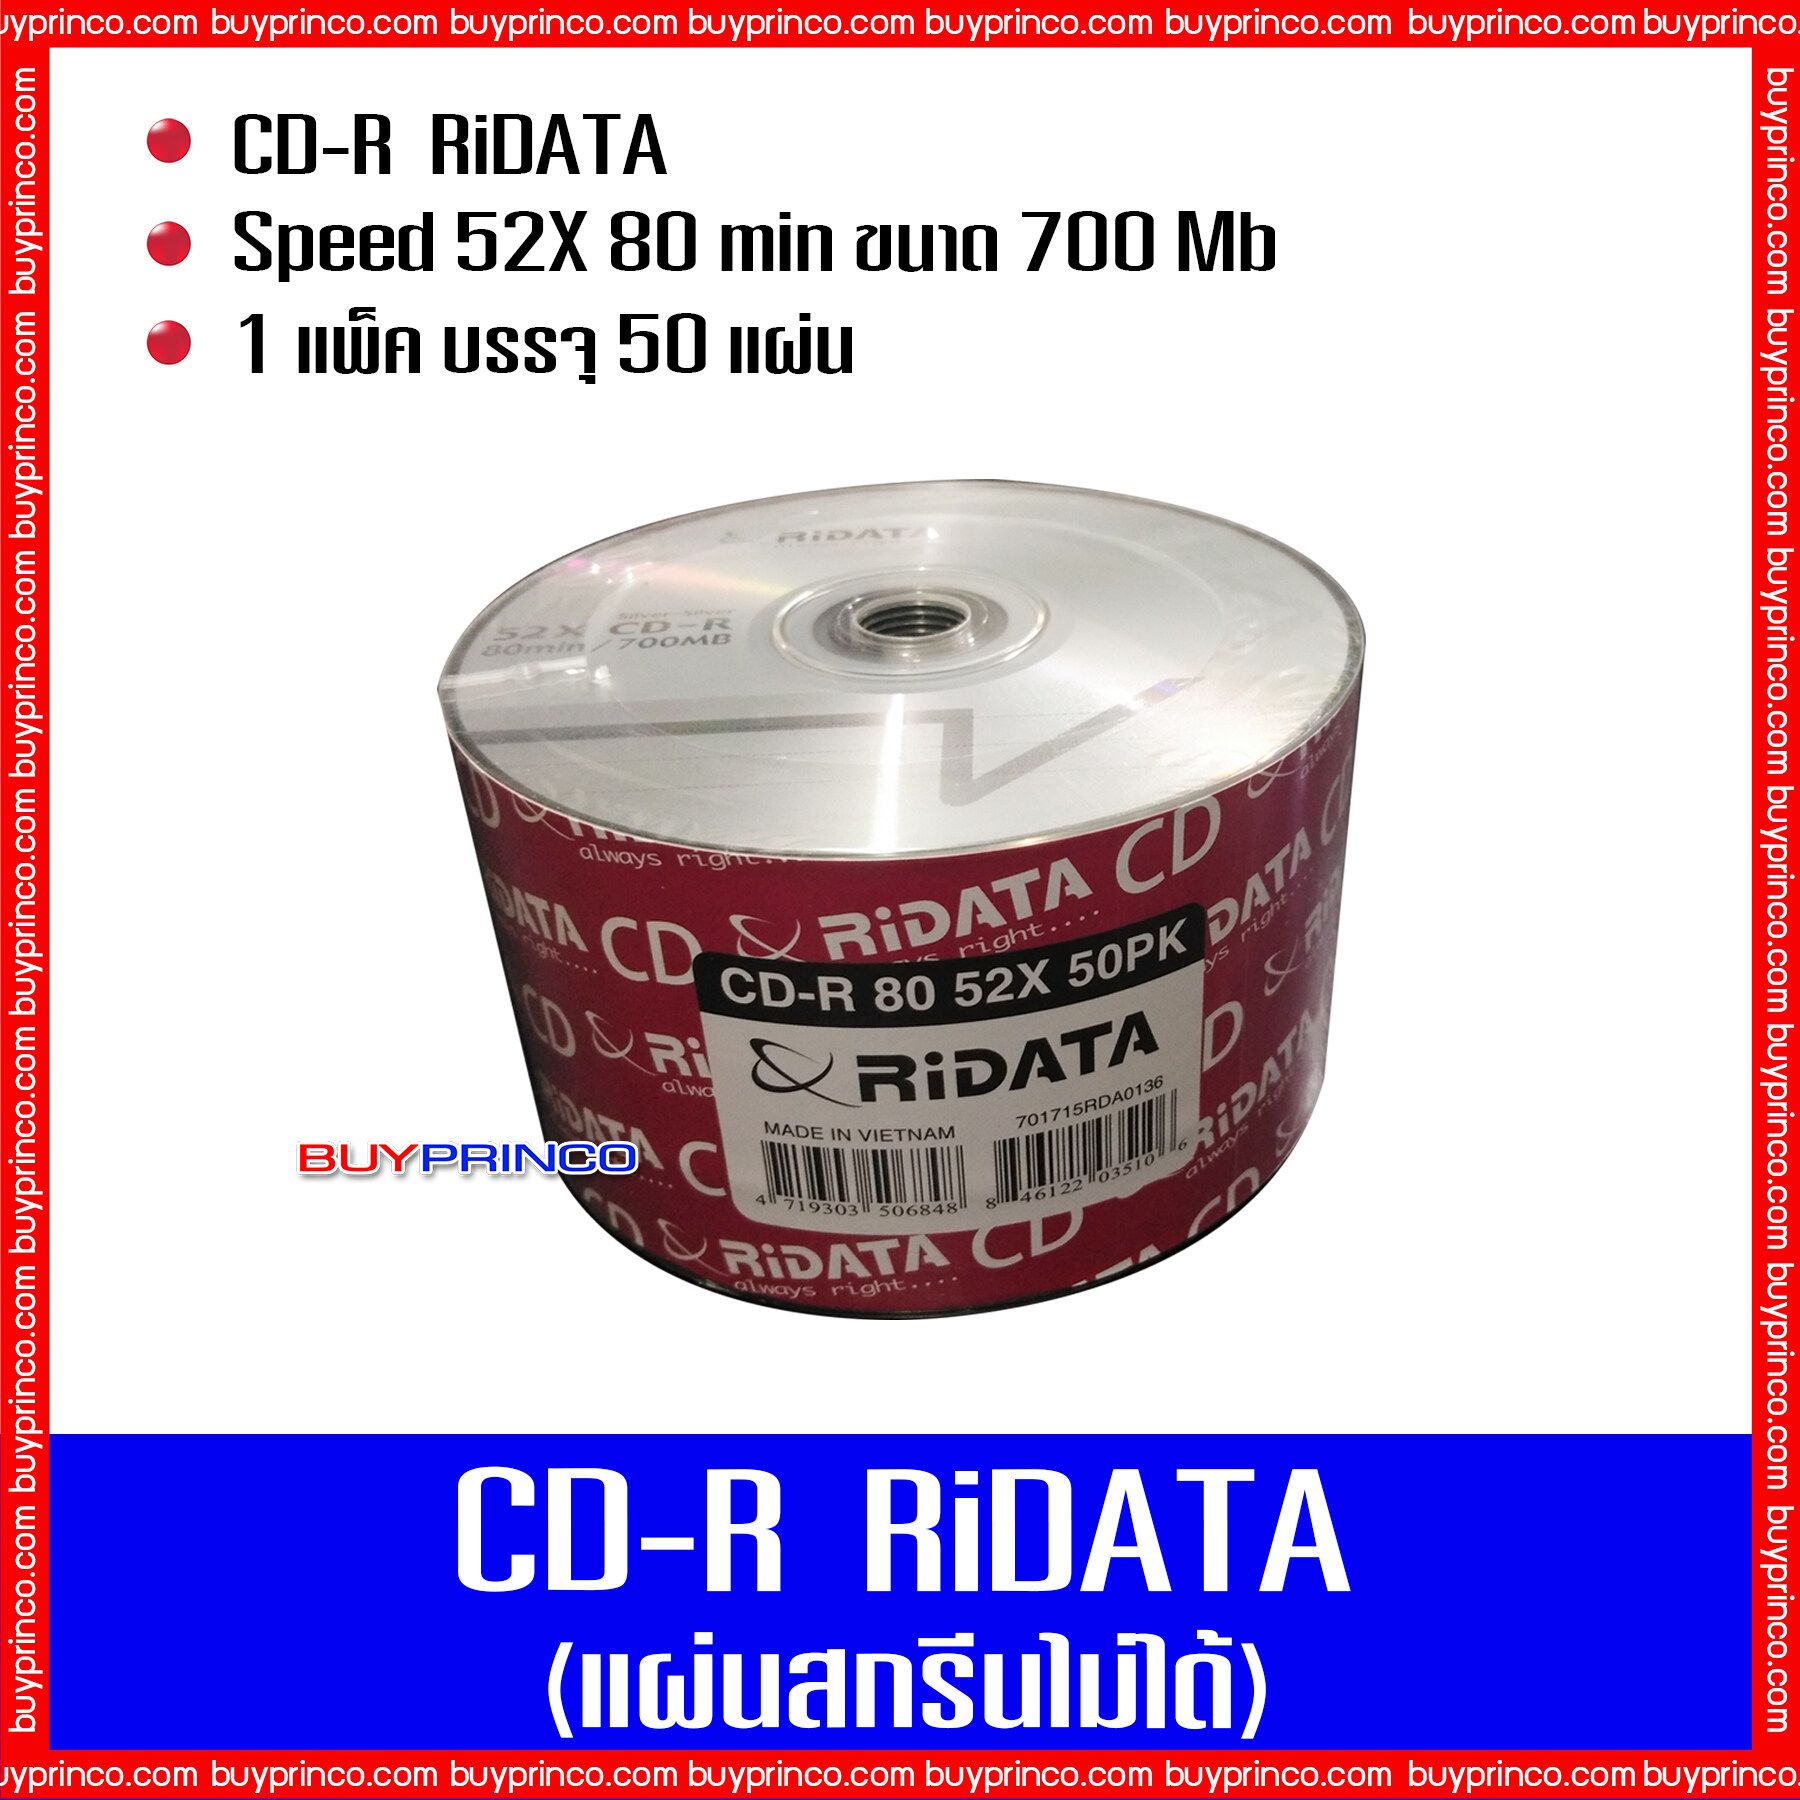 แผ่นซีดี ไรดาต้า CD R Ridata (แผ่นซีดีสกรีนไม่ได้)